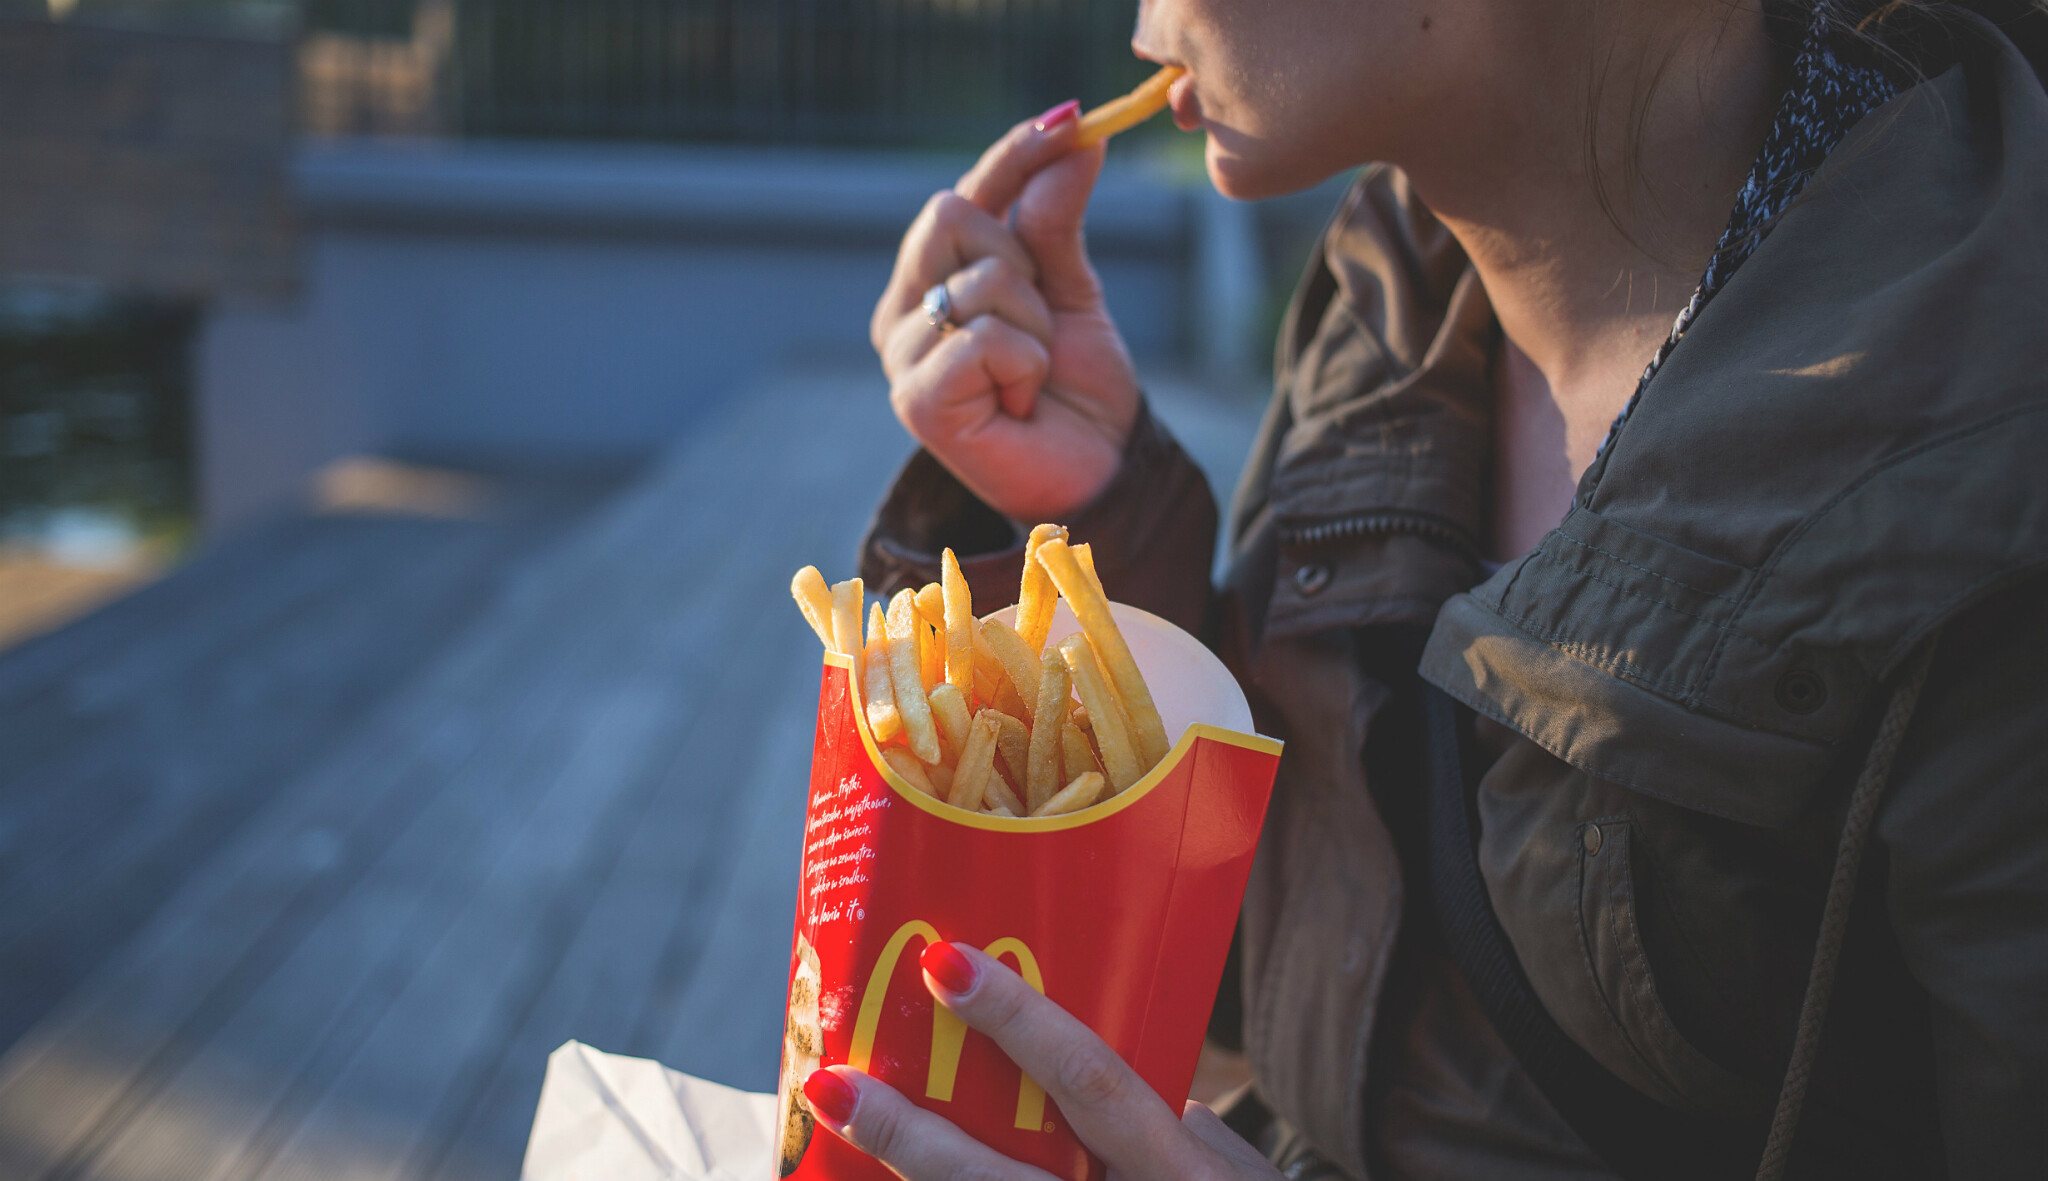 Fast foodu se v pandemii daří. McDonald’s zvýšil čtvrtletní zisk o 39 procent